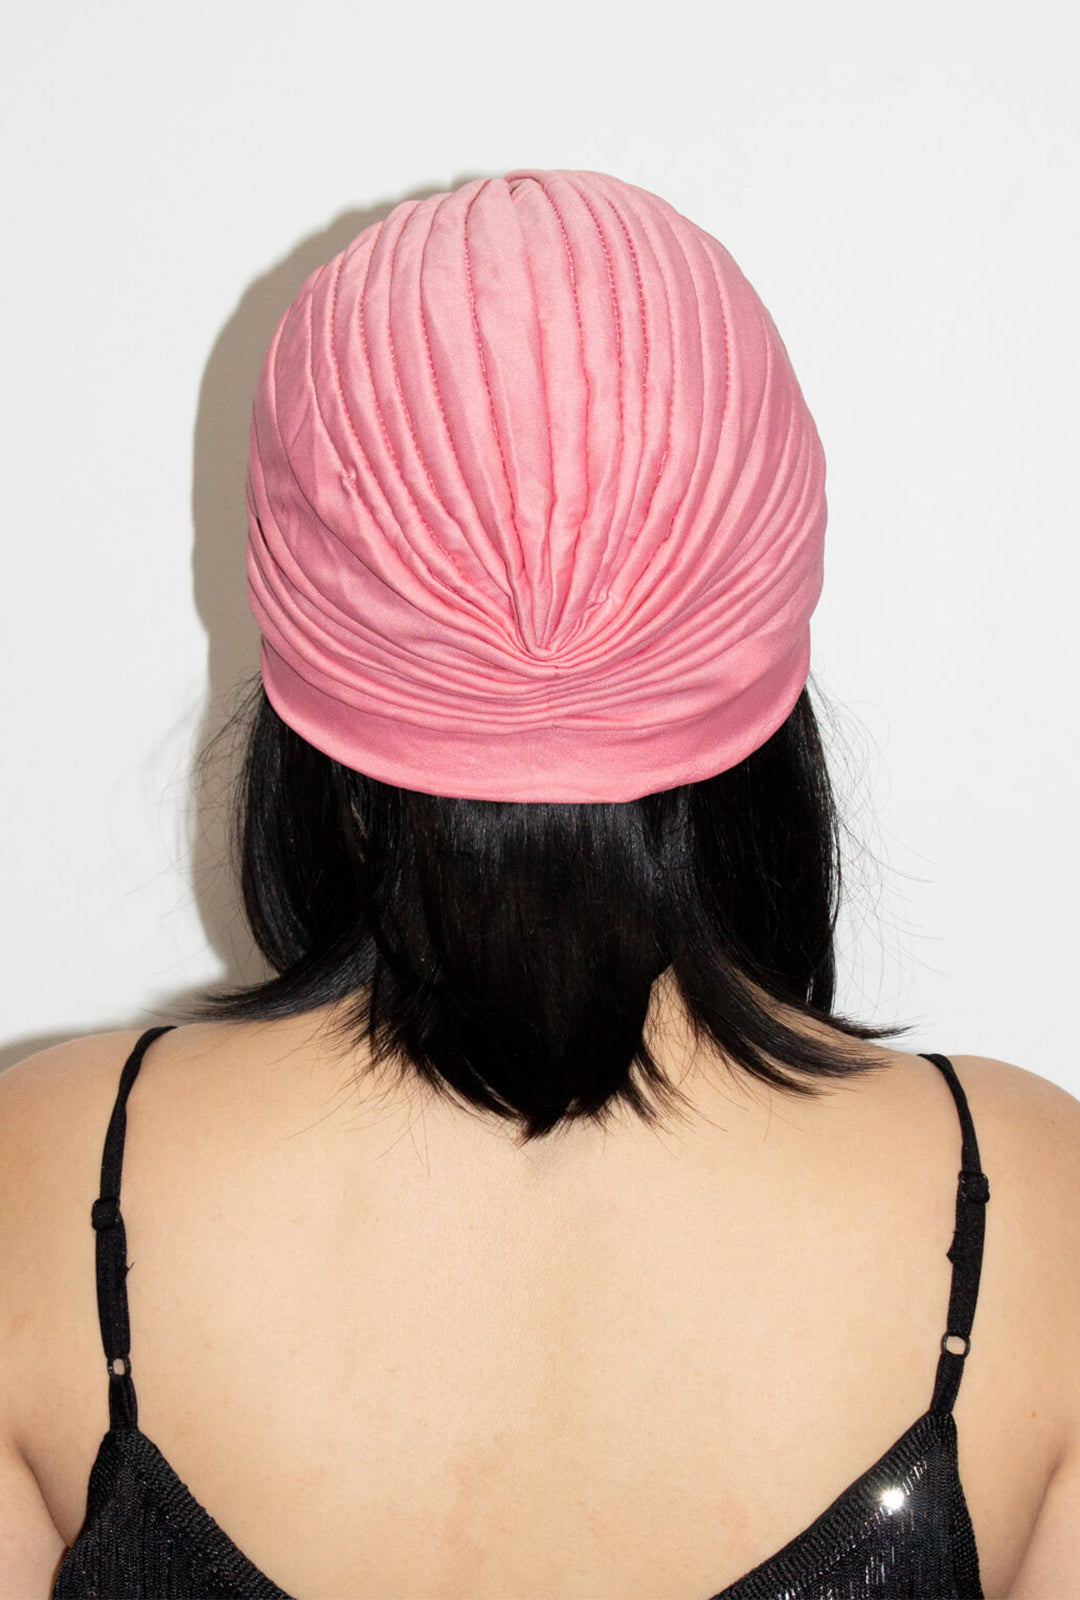 Rose Pink Turban